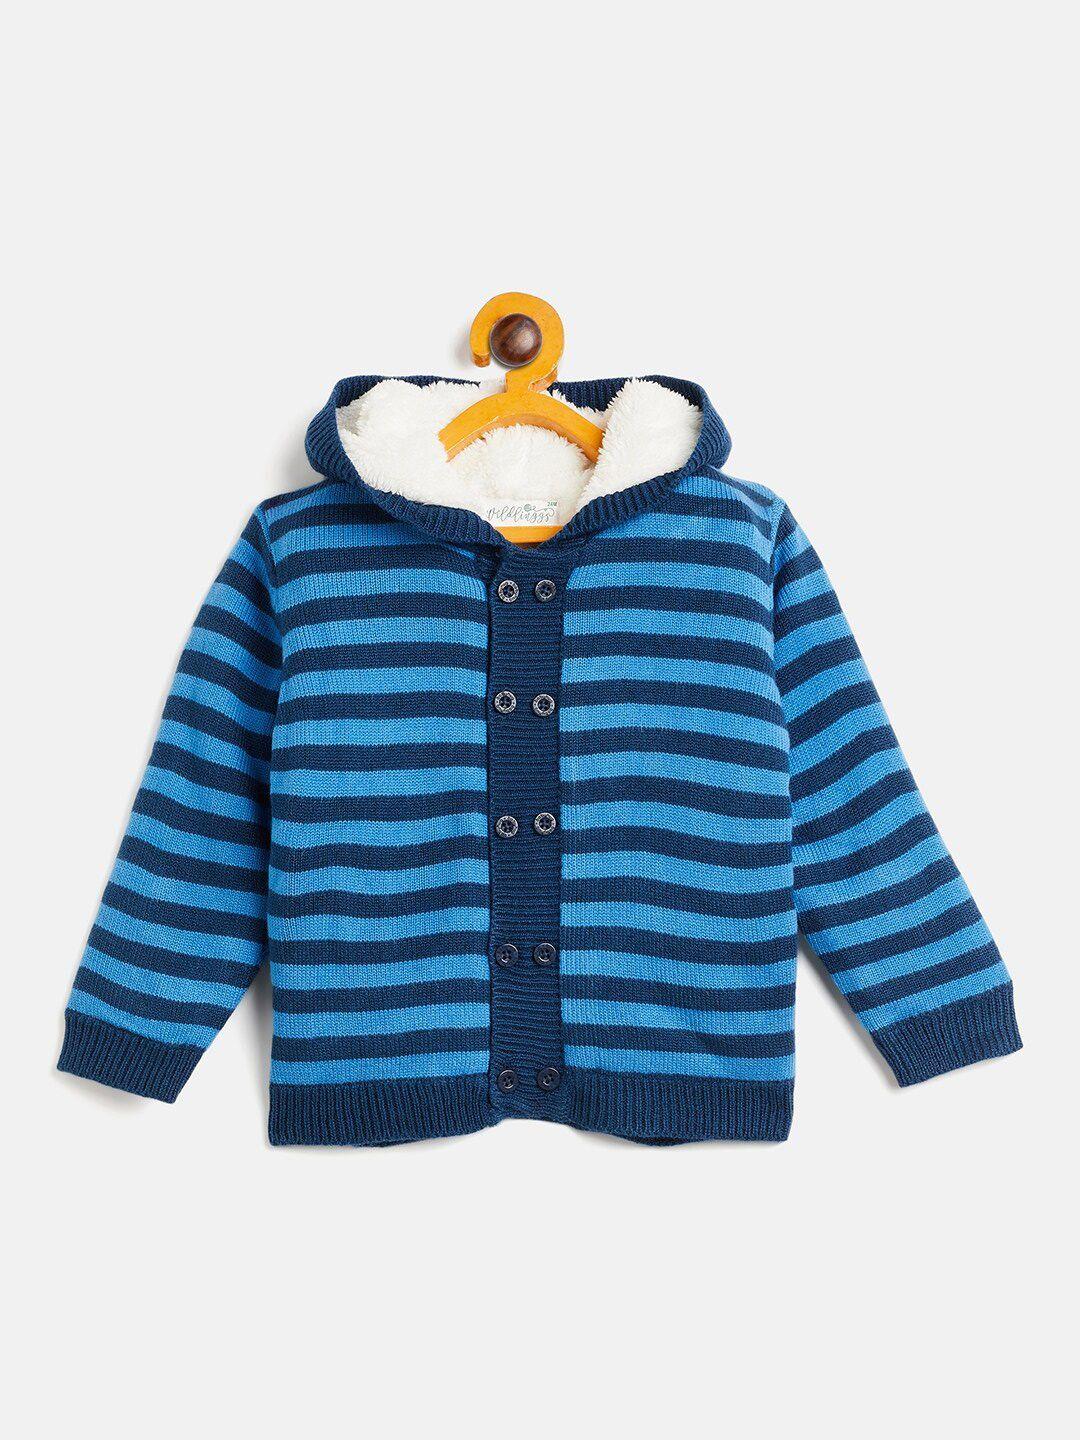 jwaaq infants kids striped hooded cotton sweater